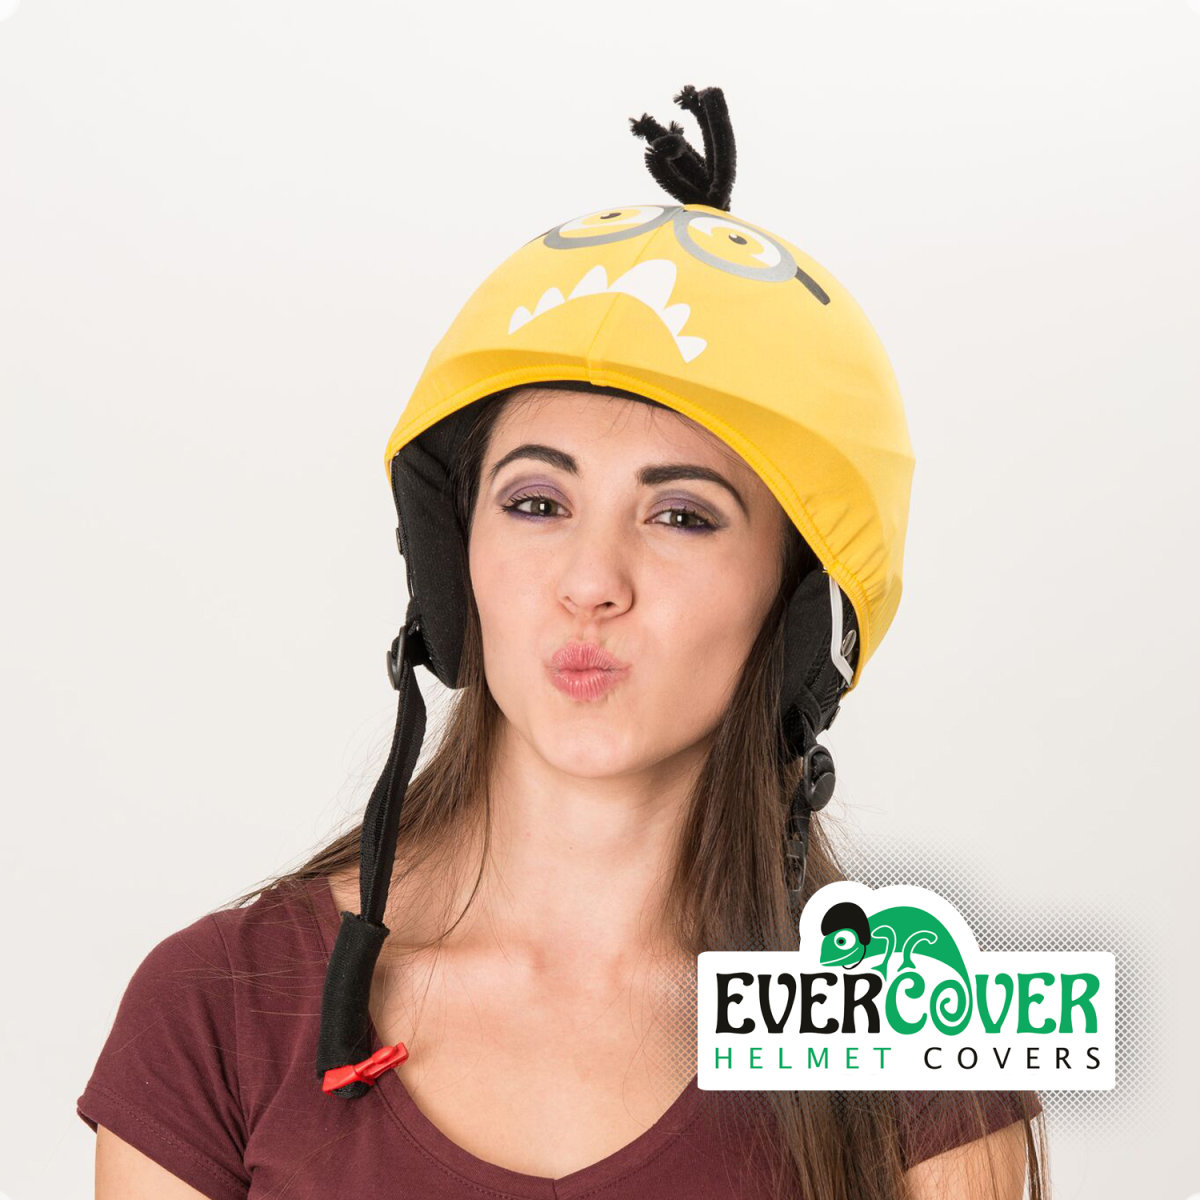 EClogo-crazy-minion-evercover-helmetcover.jpg